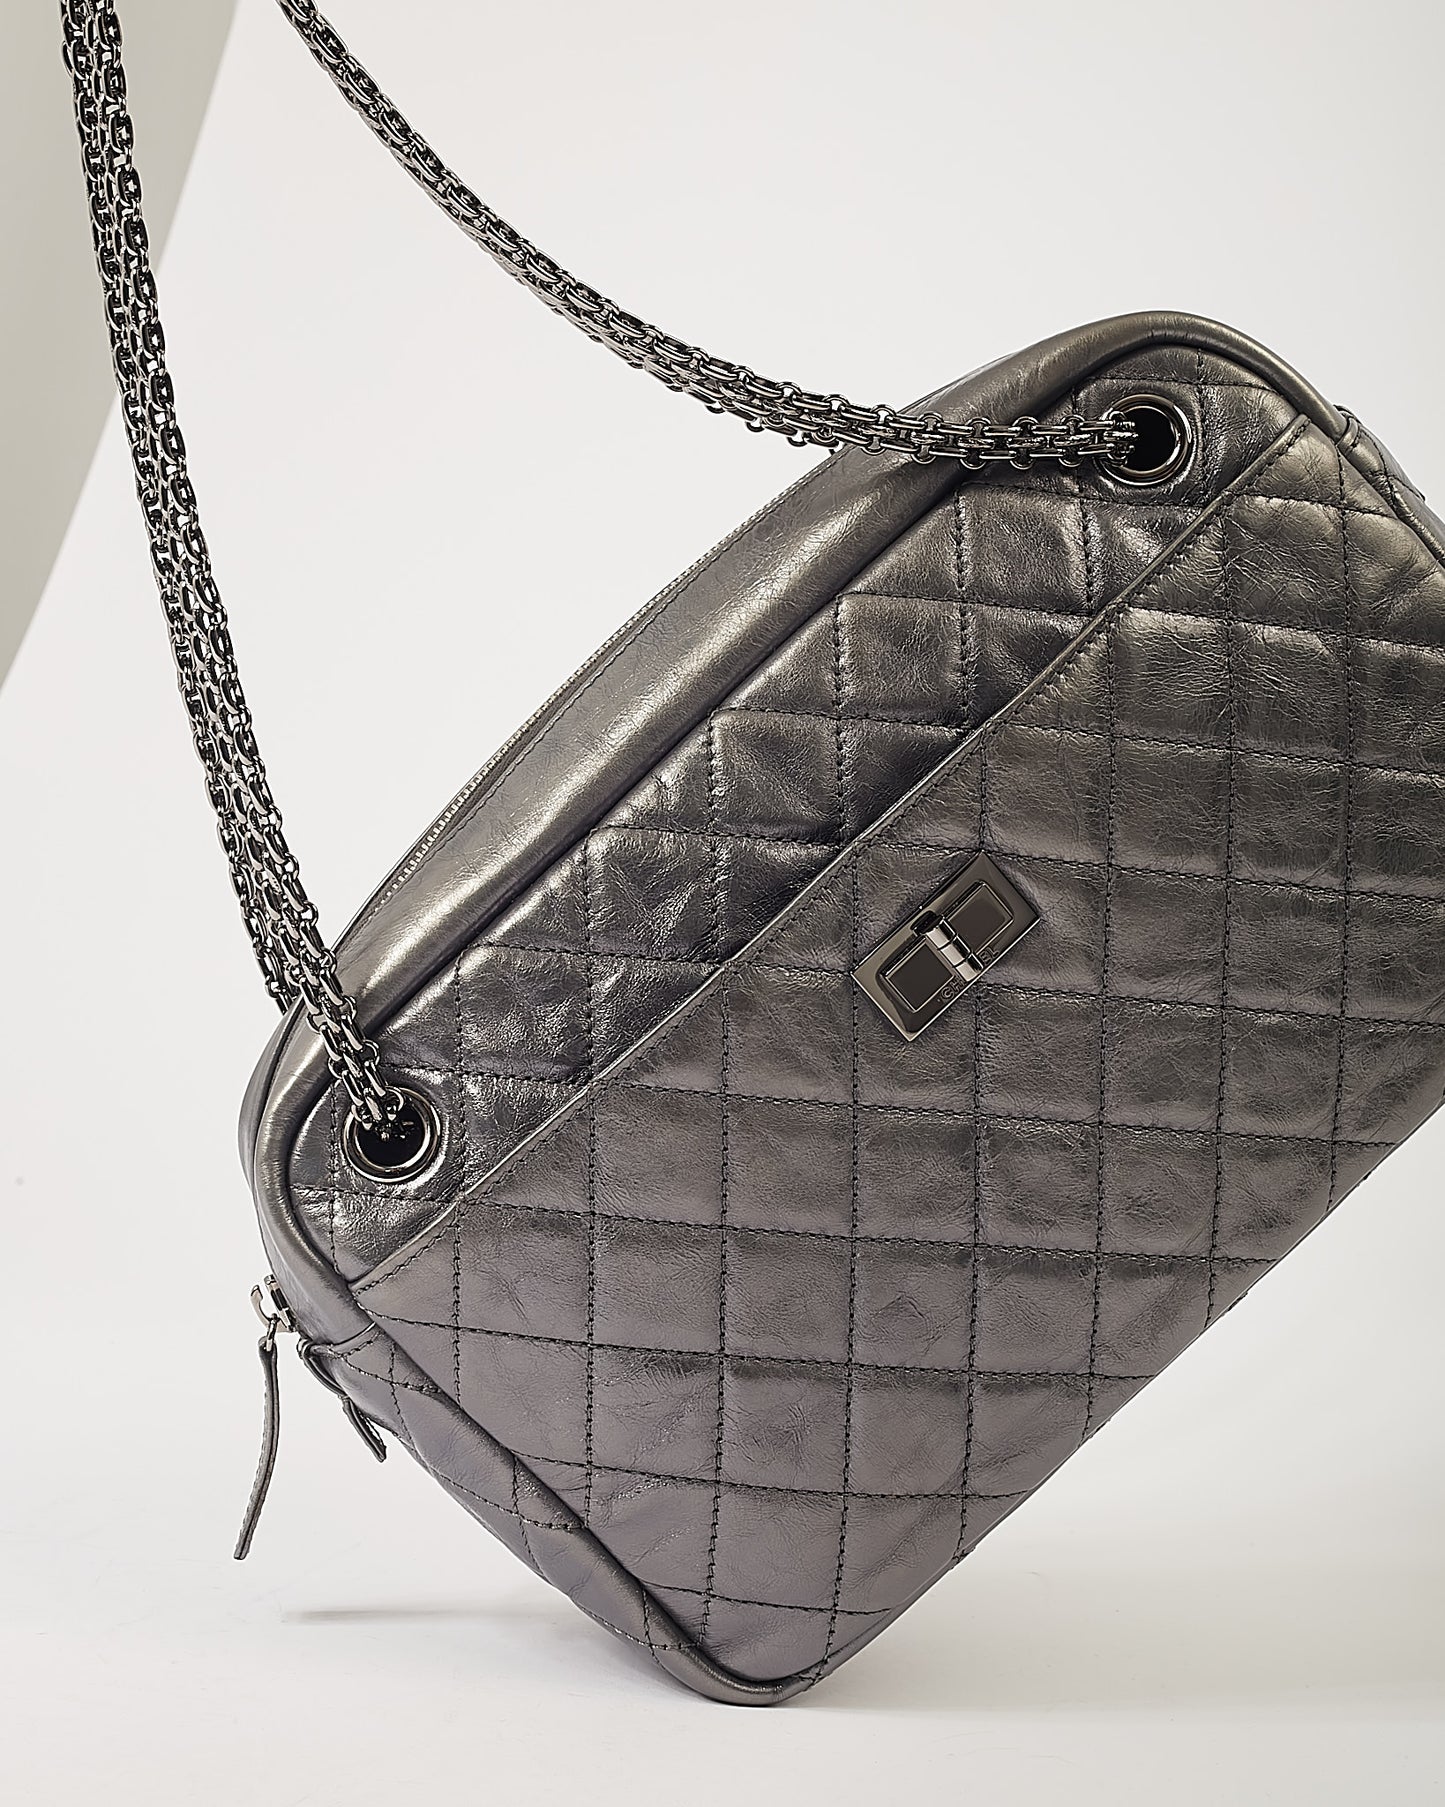 Grand sac photo réédition en cuir argenté foncé Chanel